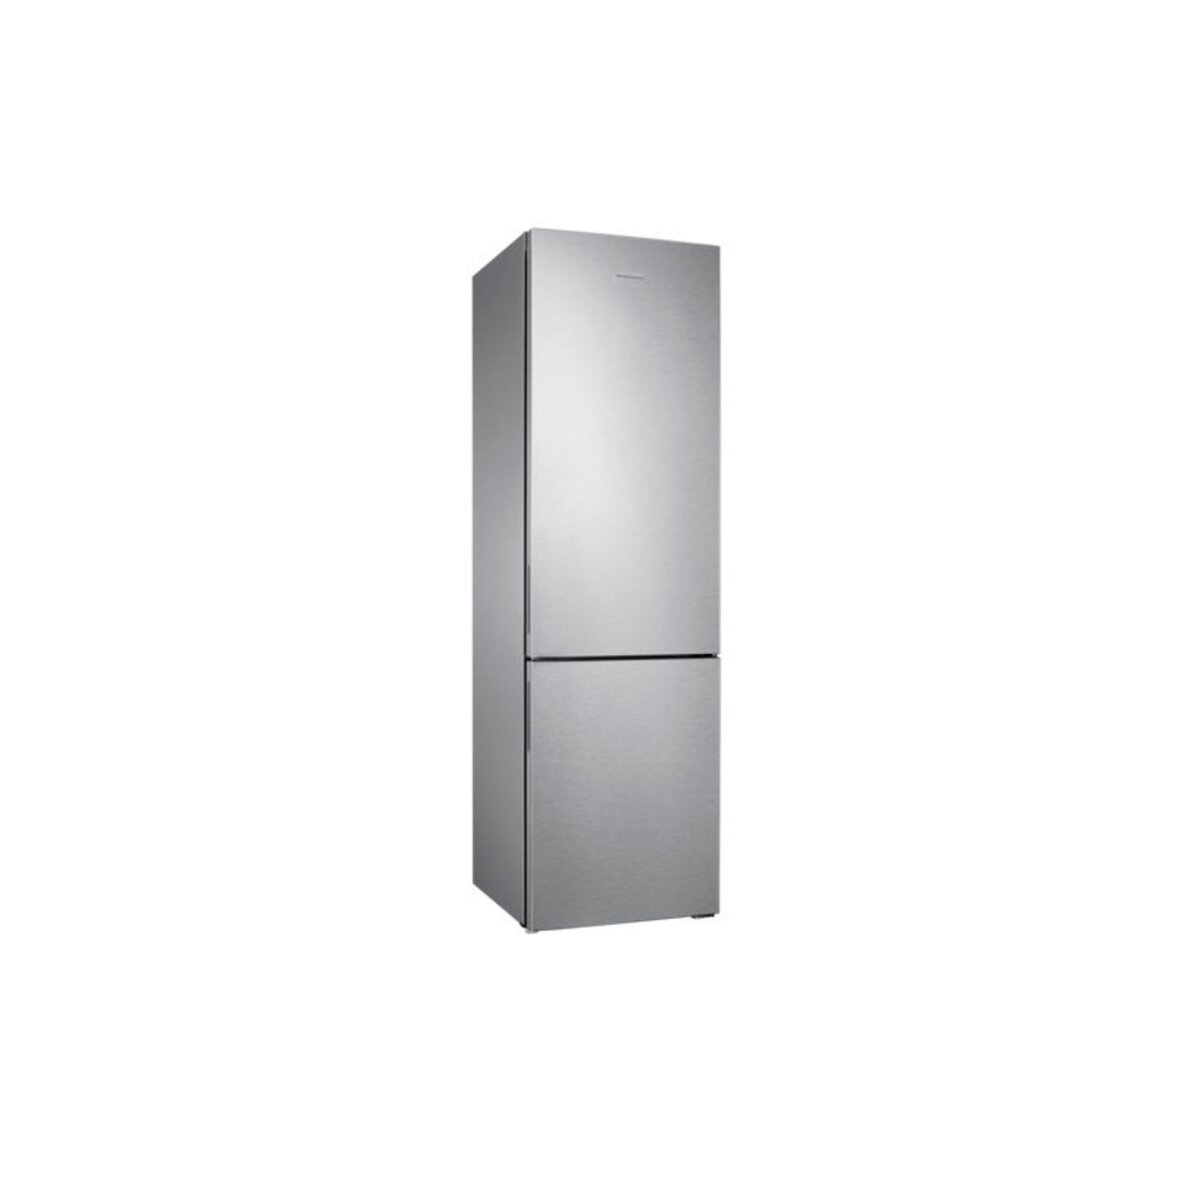 SAMSUNG Réfrigérateur combiné RB37J5018SA, 365 L, Froid No Frost